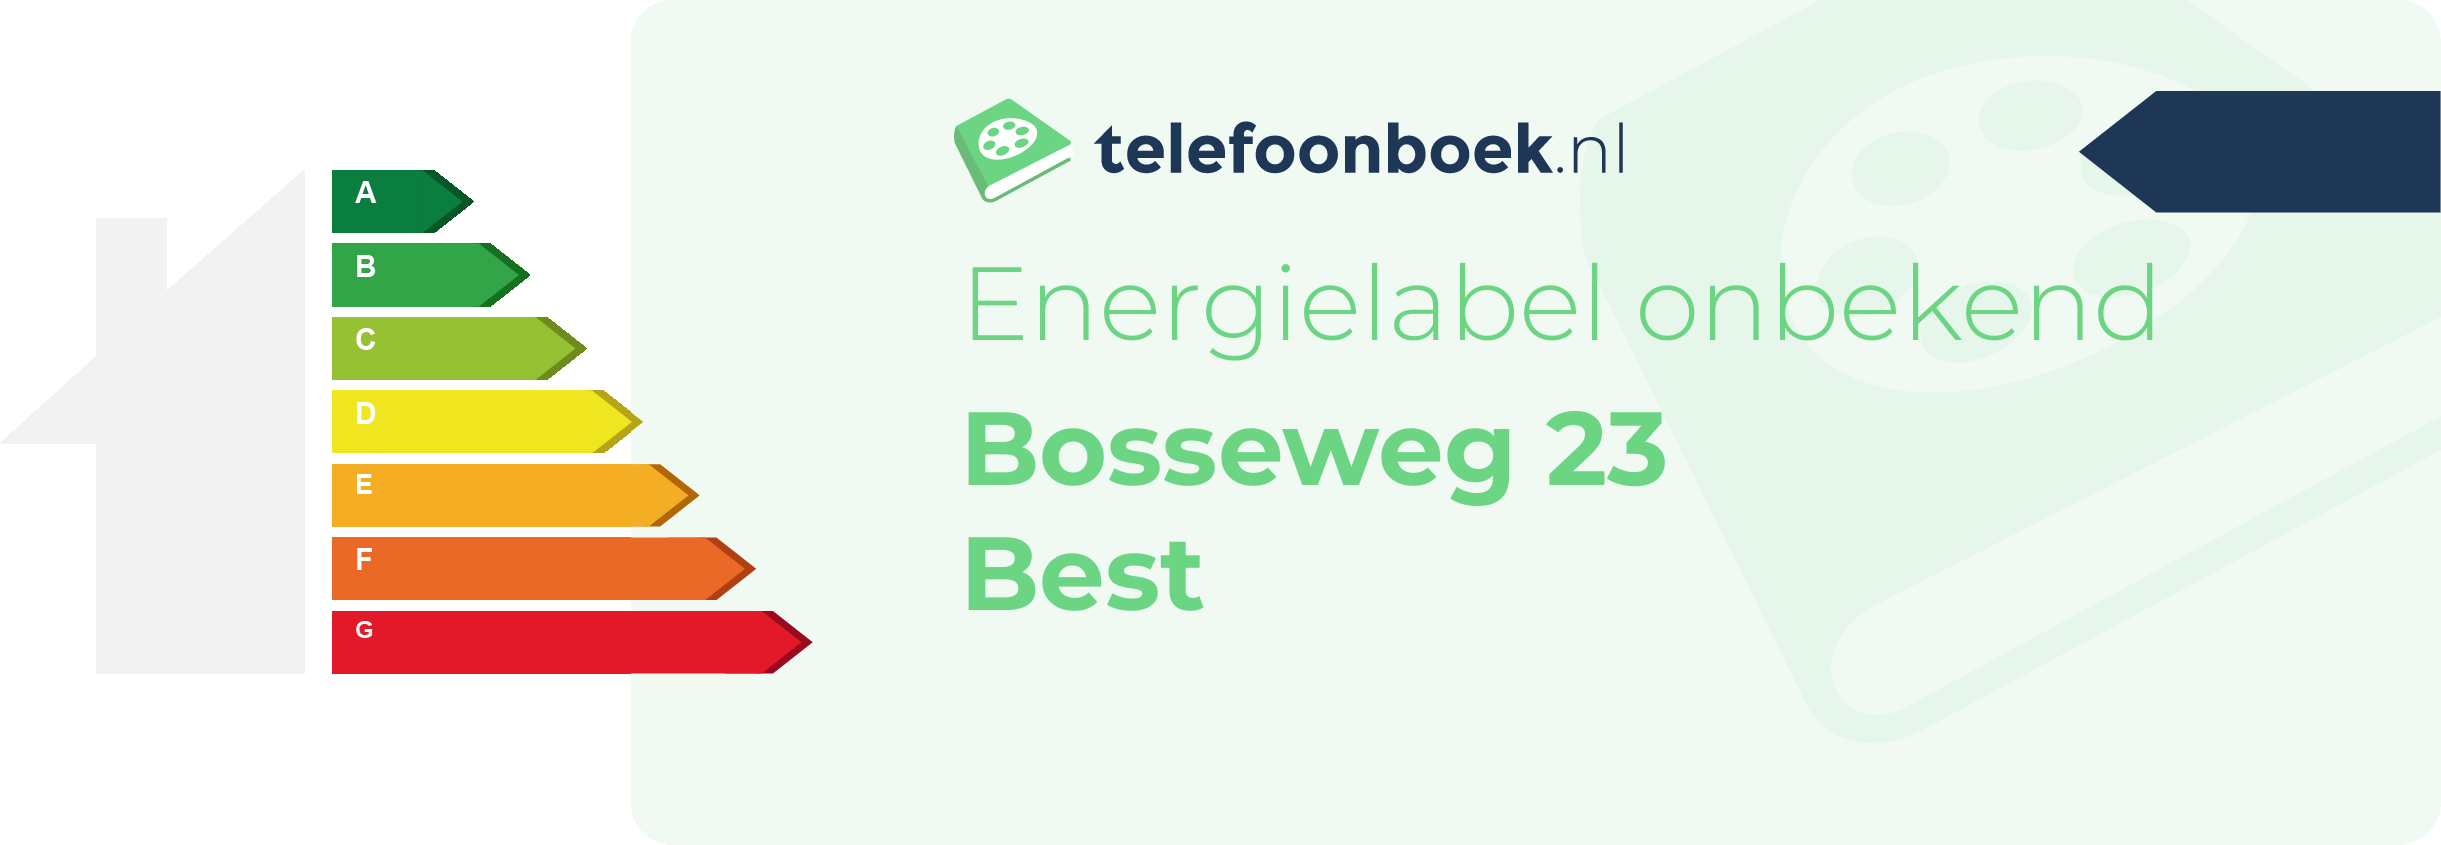 Energielabel Bosseweg 23 Best